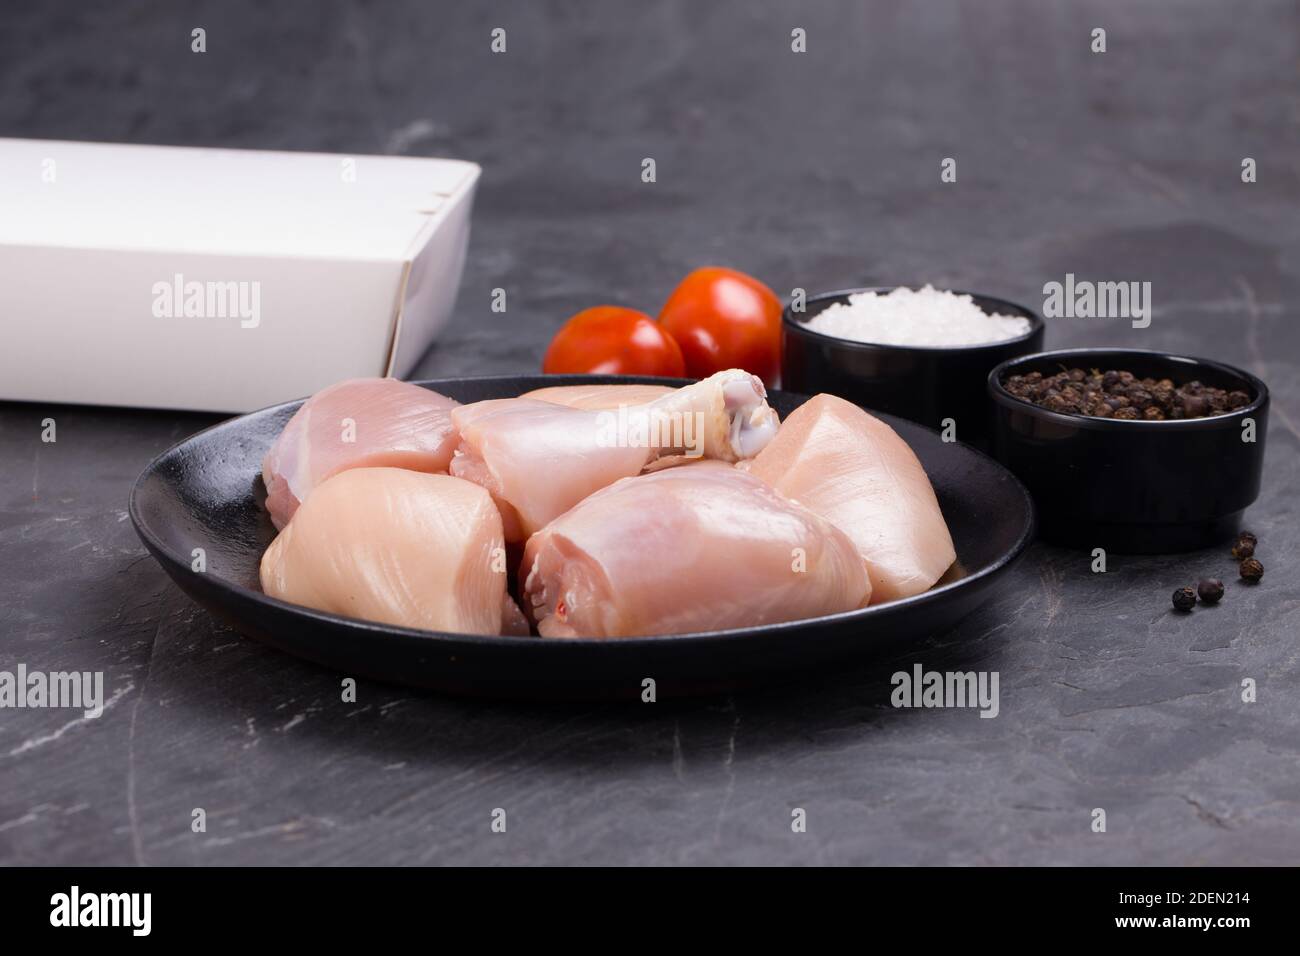 Rohes Huhn zartes Curry ohne Haut auf schwarz angeordnet geschnitten Teller mit Kochzutaten auf weißem Hintergrund mit Lieferkarton In der Nähe Stockfoto